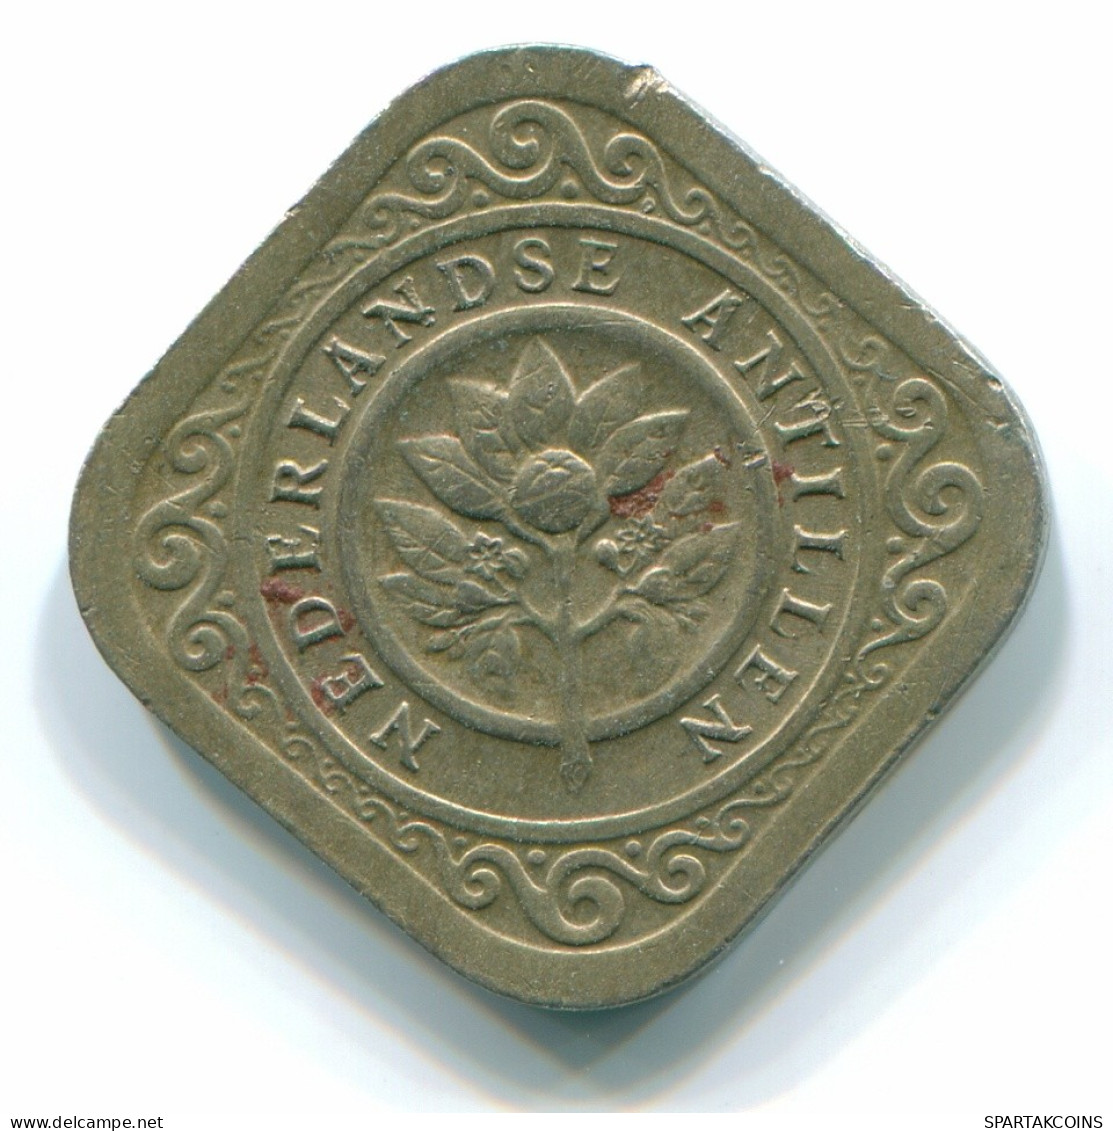 5 CENTS 1967 NETHERLANDS ANTILLES Nickel Colonial Coin #S12454.U.A - Niederländische Antillen